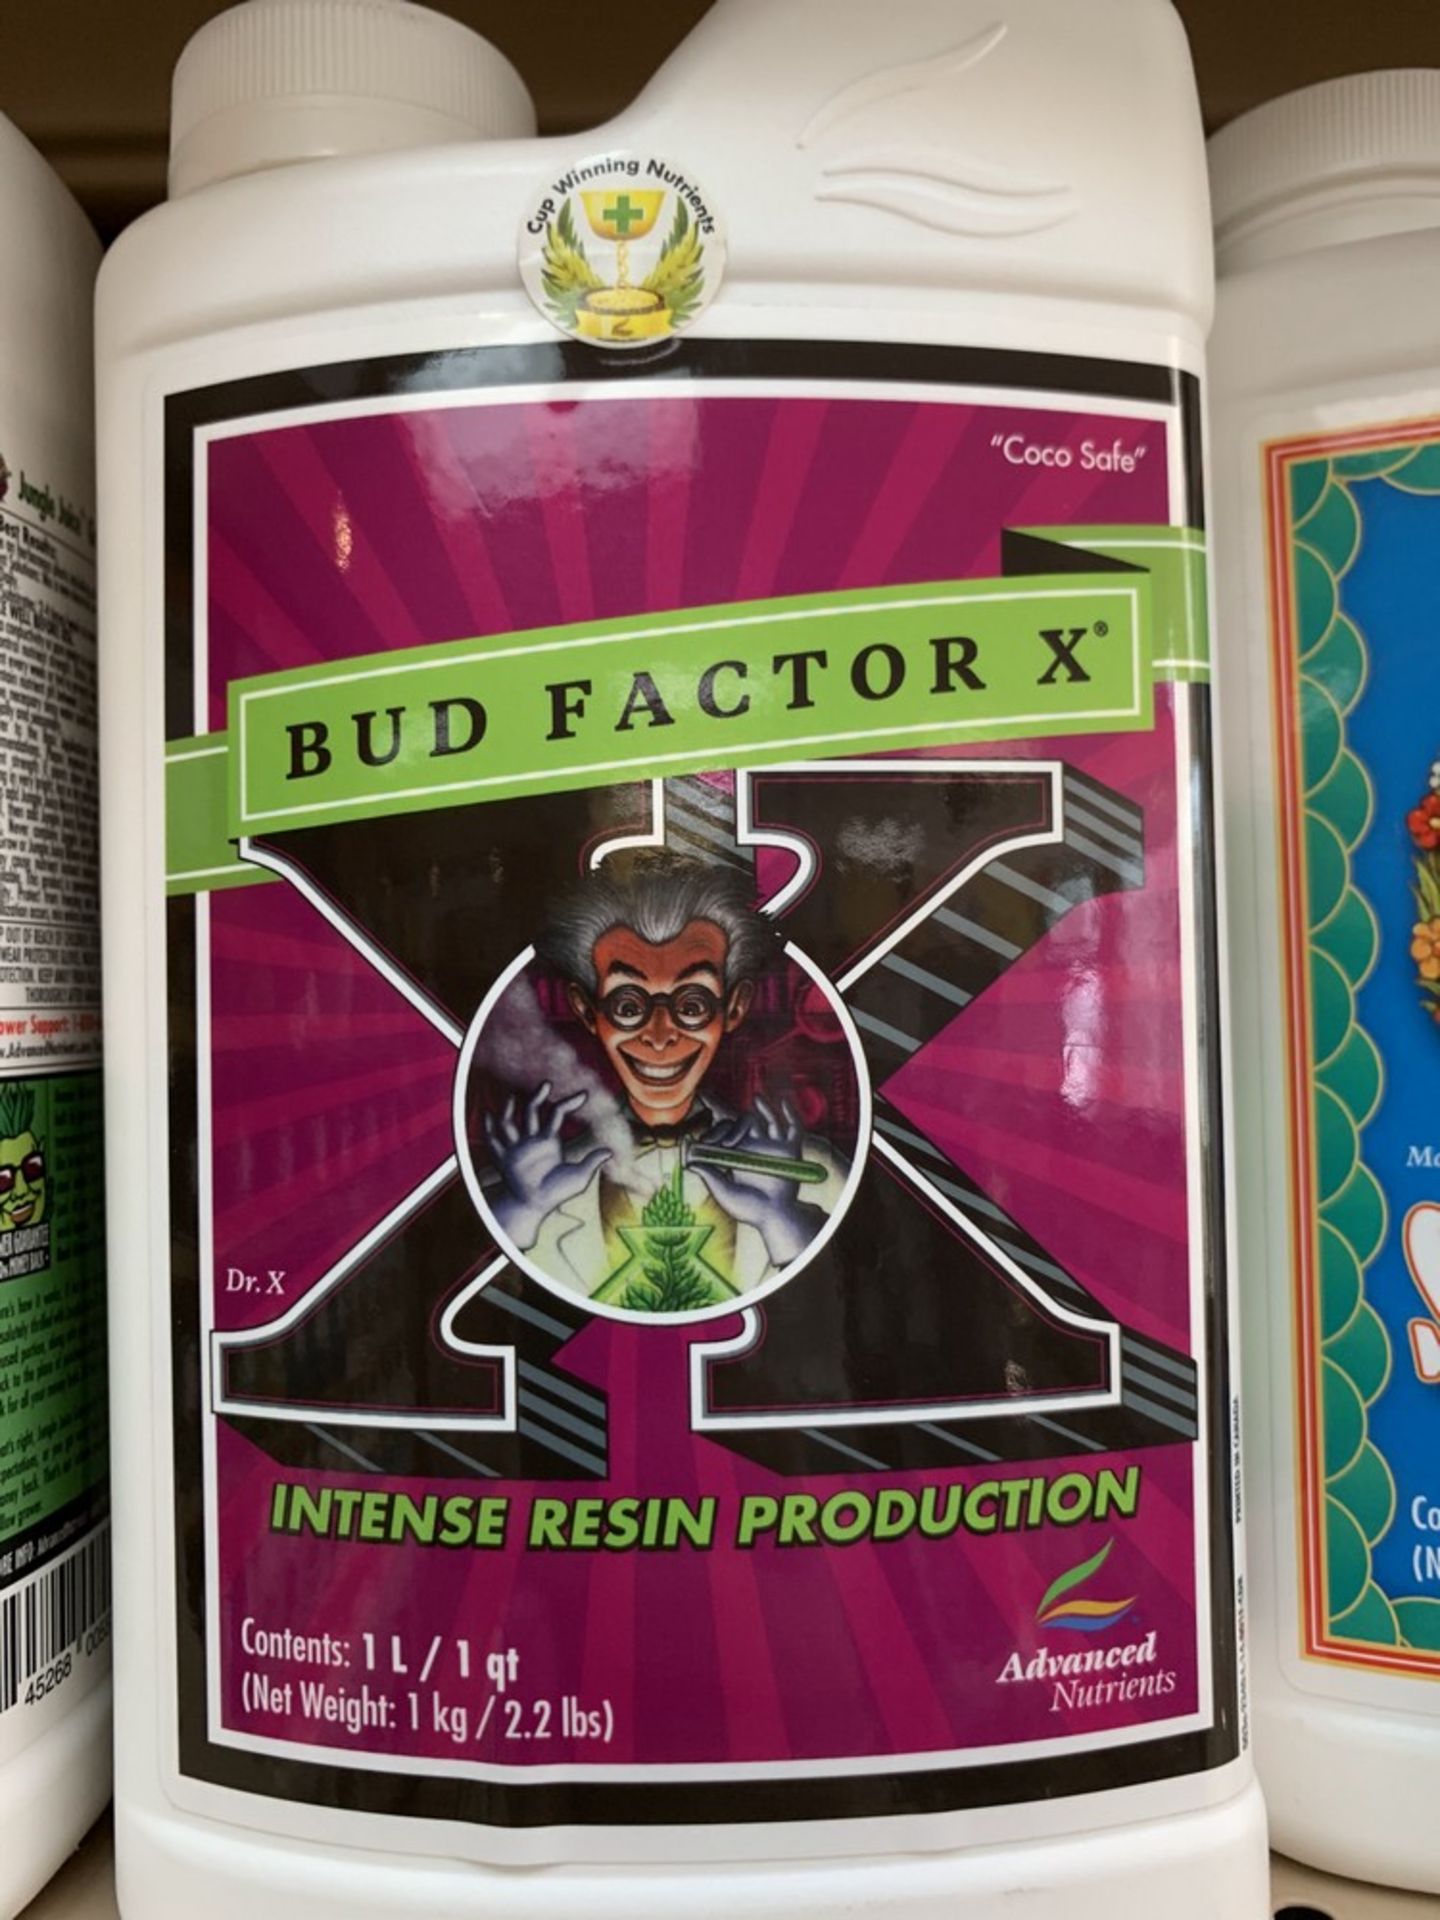 Asst'd - Bud Factor X & B-52